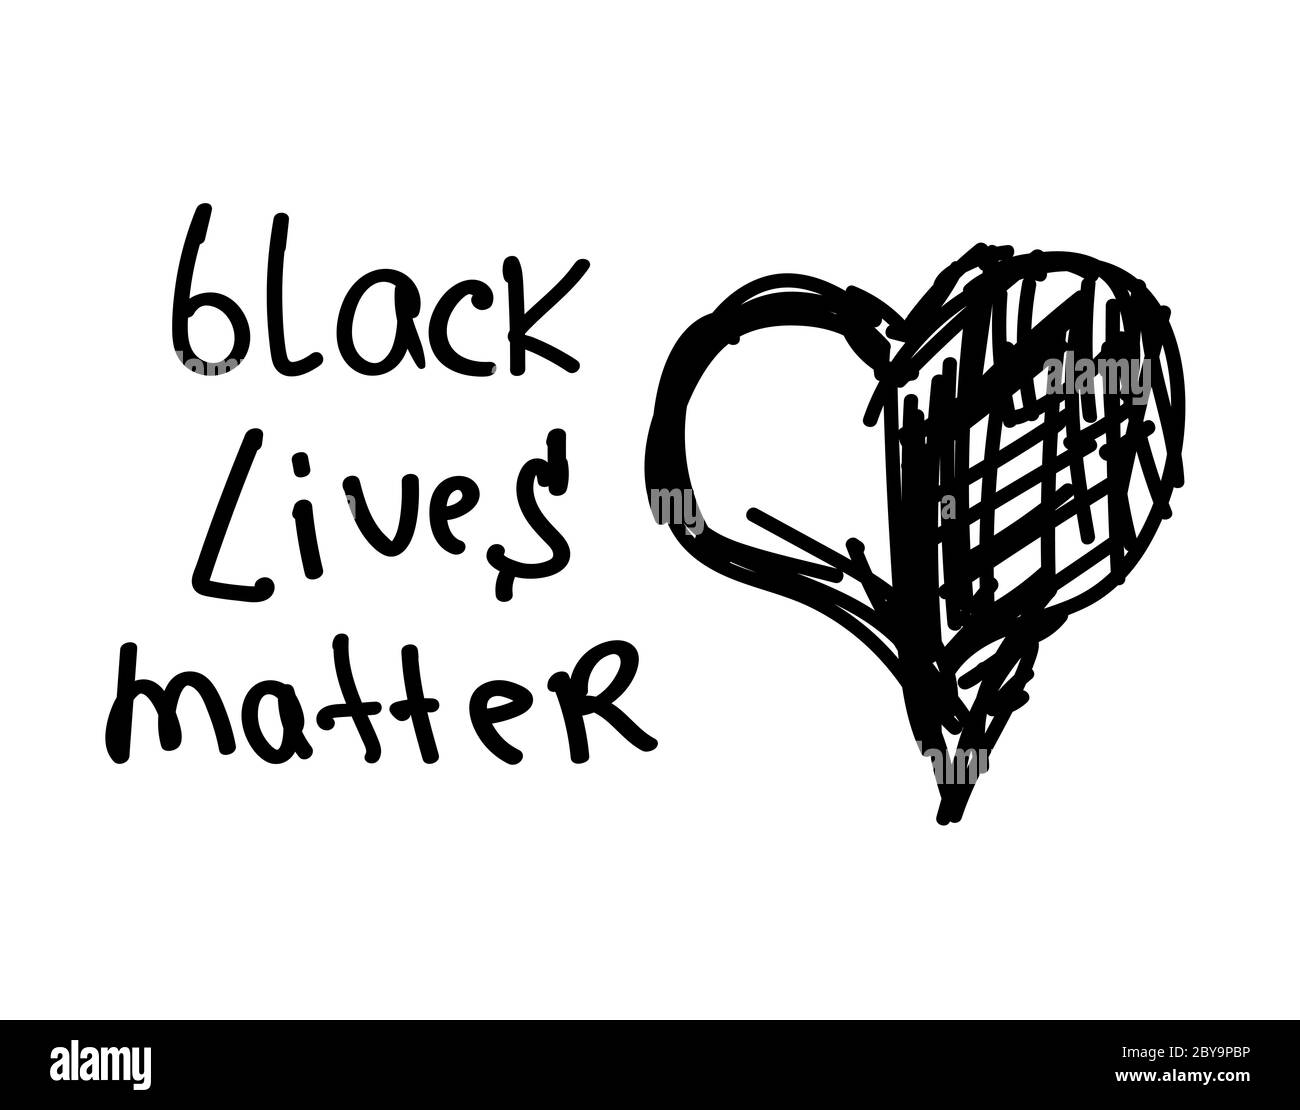 Arrêtez le racisme. Les vies noires comptent. Bannière de protestation sur les droits humains des Noirs en Amérique des États-Unis. Affiche d'icône et symbole. Banque D'Images